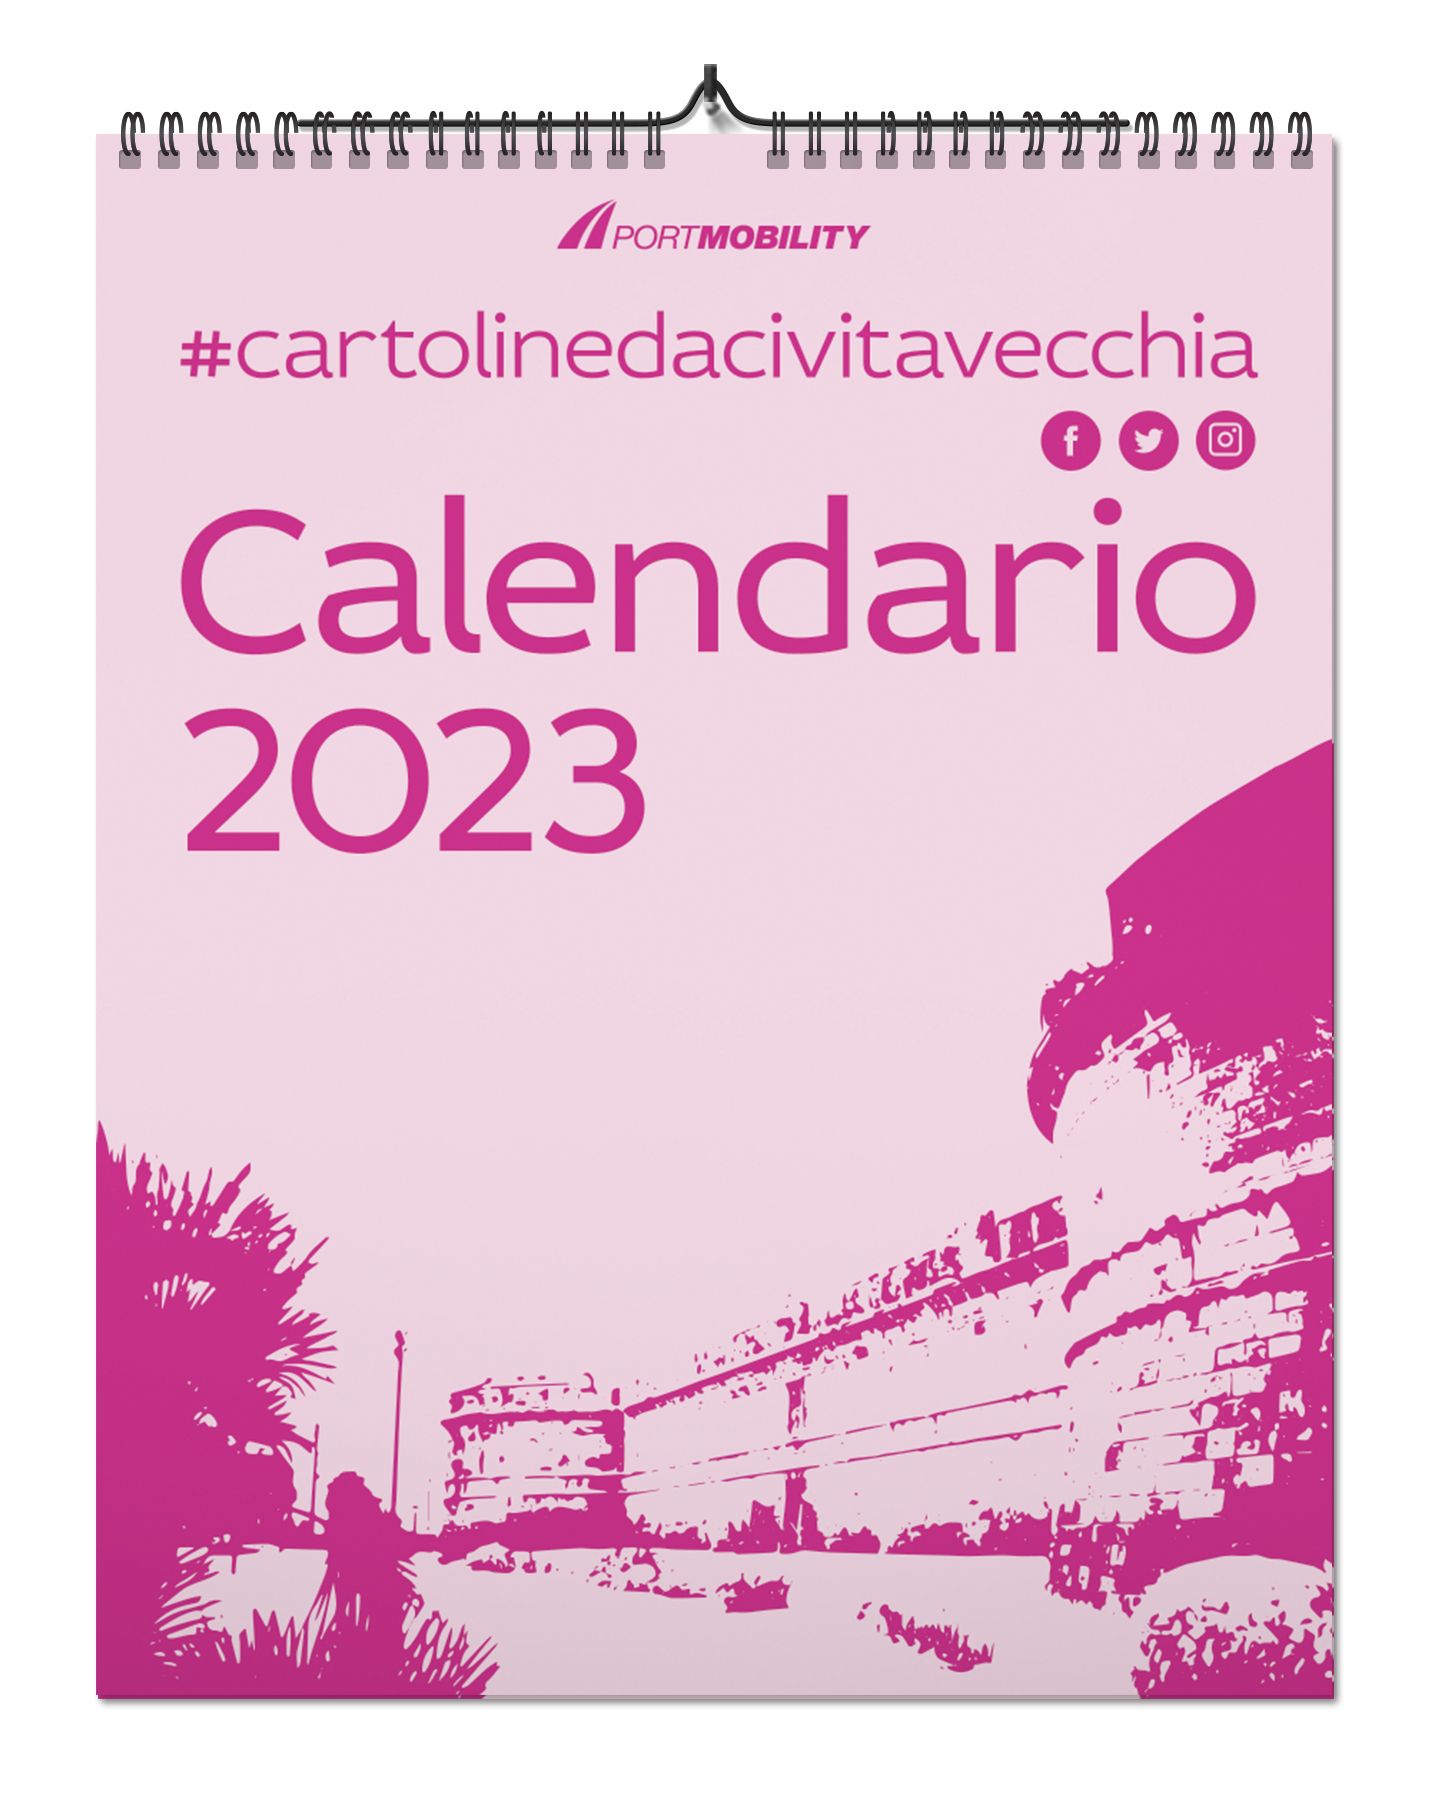 Cartoline da Civitavecchia 2023: La copertina del Calendario 